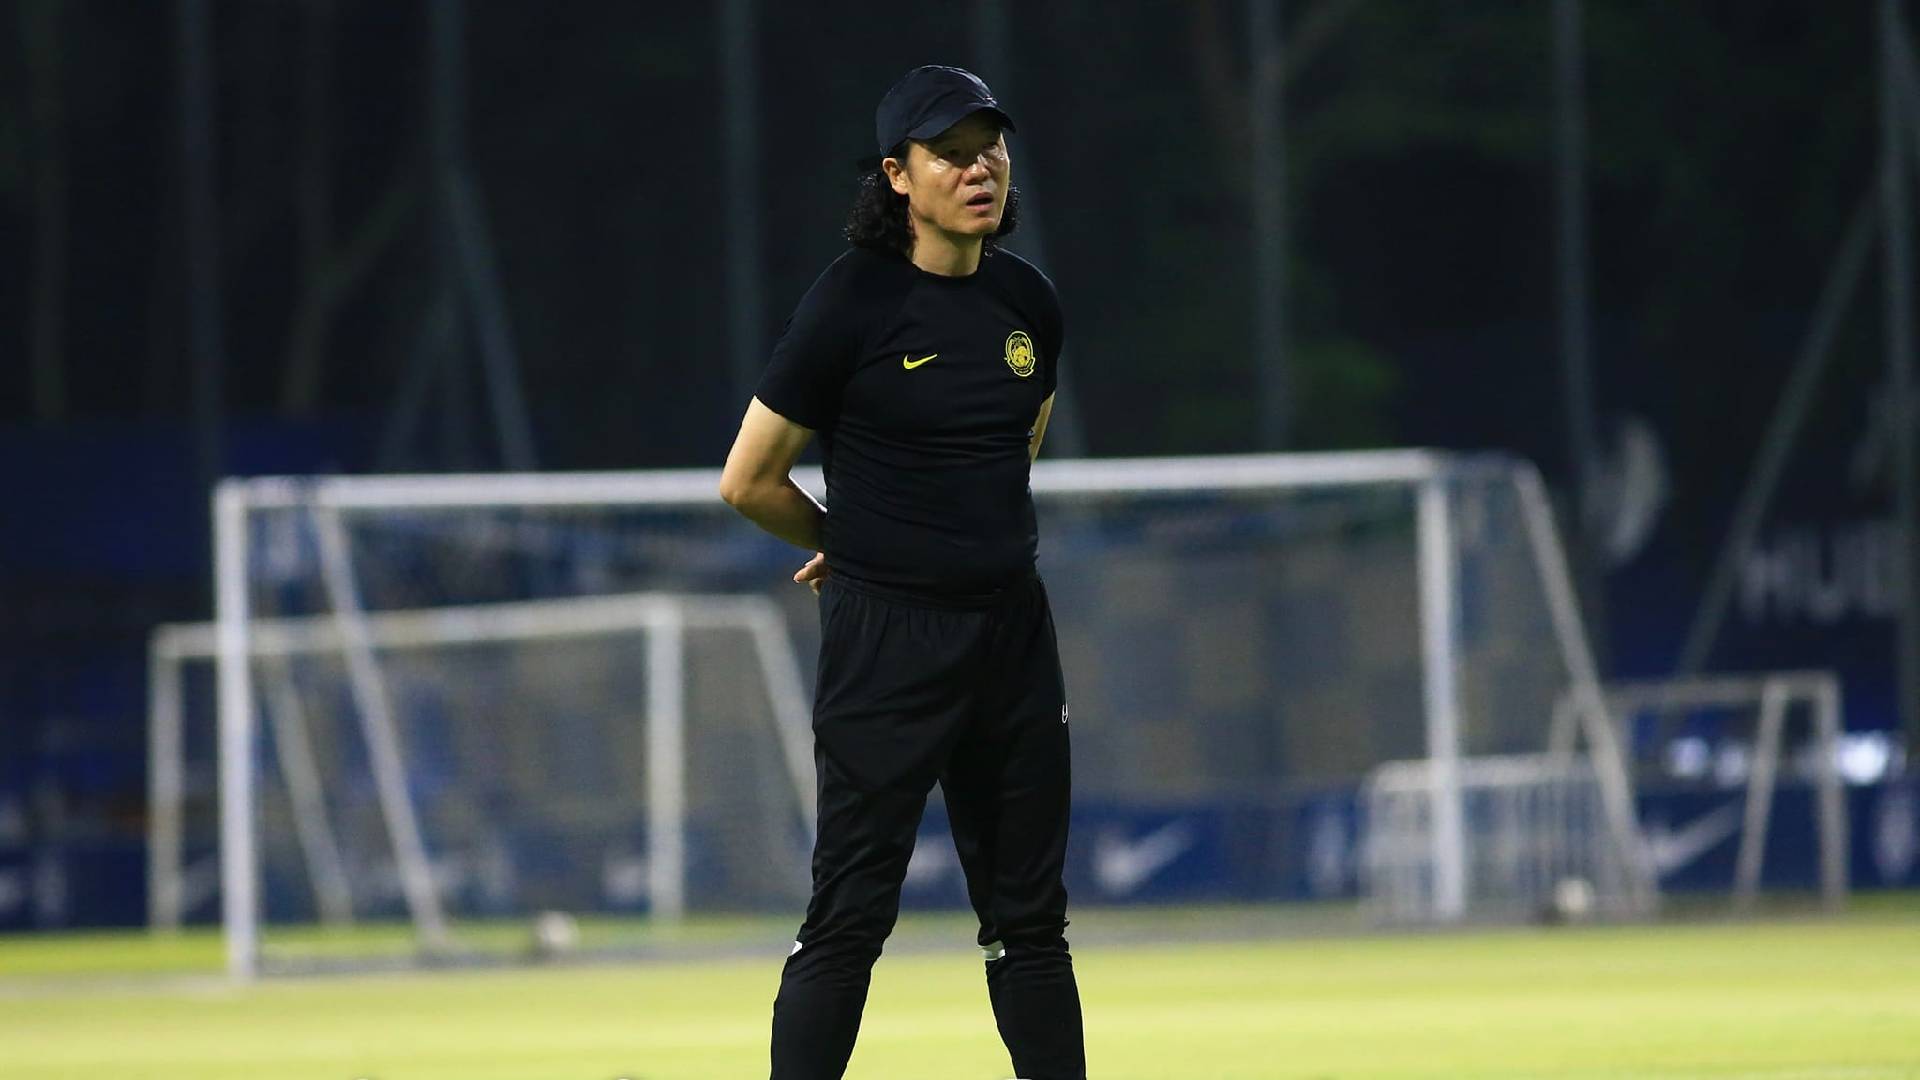 Kim Pan gon FA Malaysia 2 "Paulo & Endrick Ada Kualiti Yang Diinginkan" - Kim Pan-gon